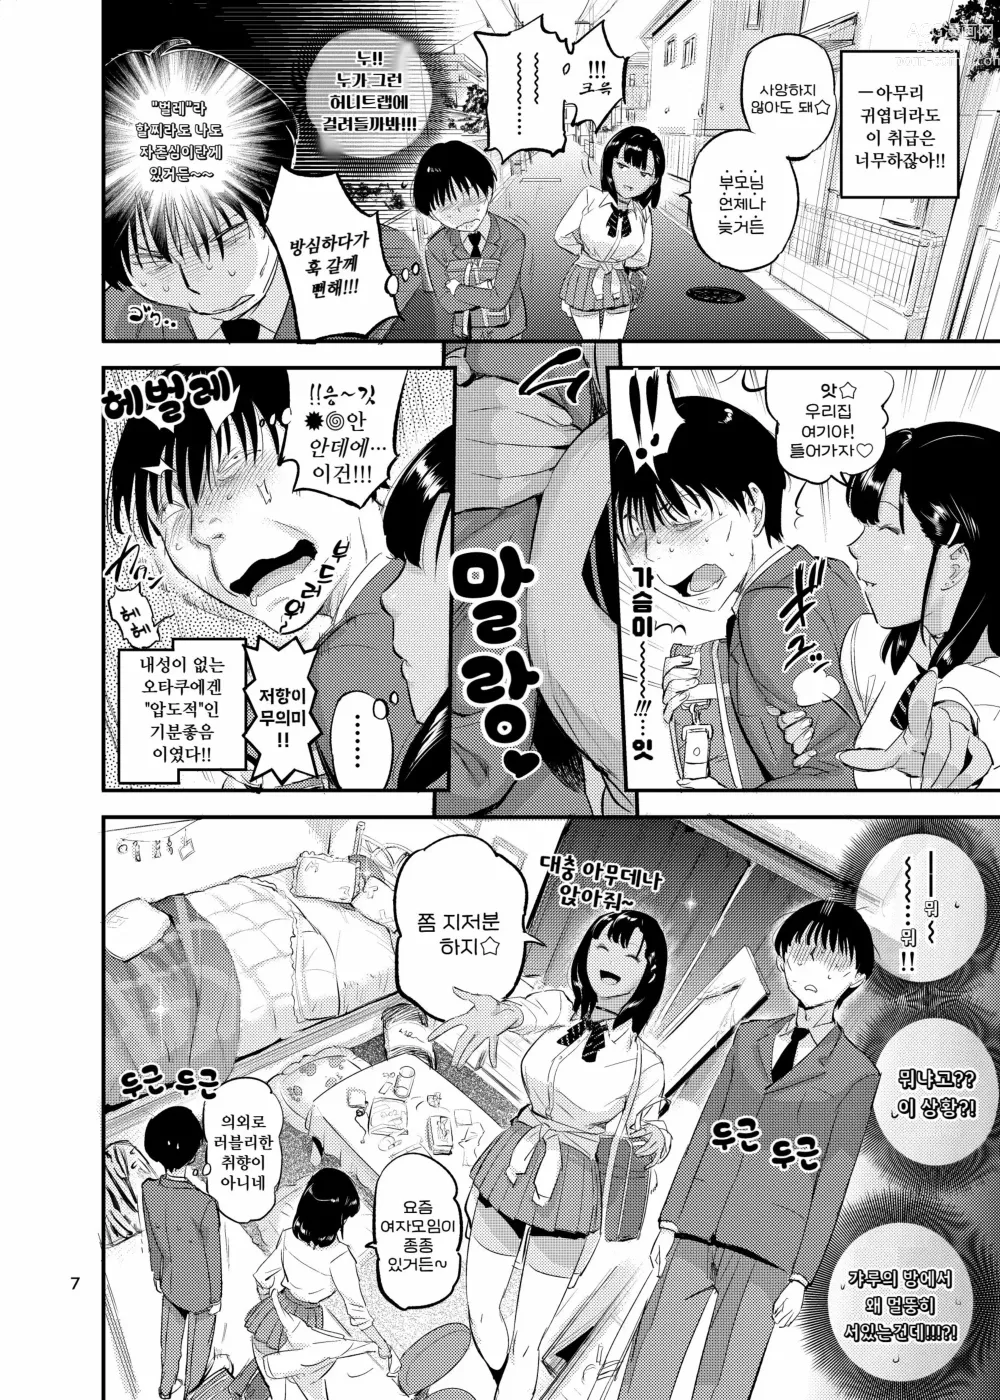 Page 7 of doujinshi 天上美人は蟻の顔見てほくそ笑む